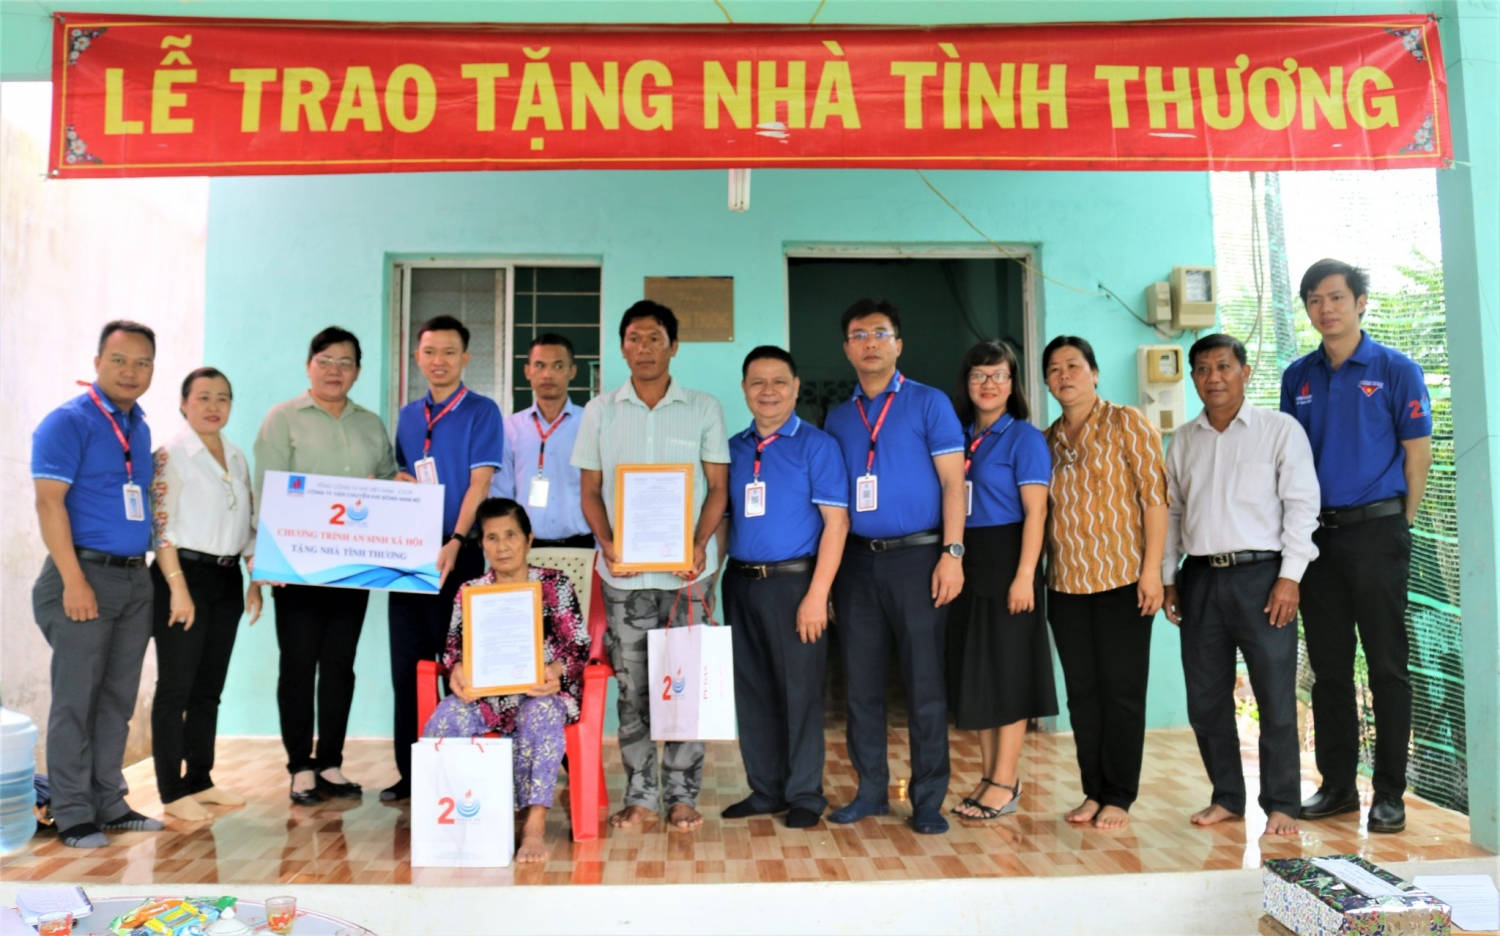 KĐN trao tặng 2 nhà tình thương tại Cần Giờ, TP HCM